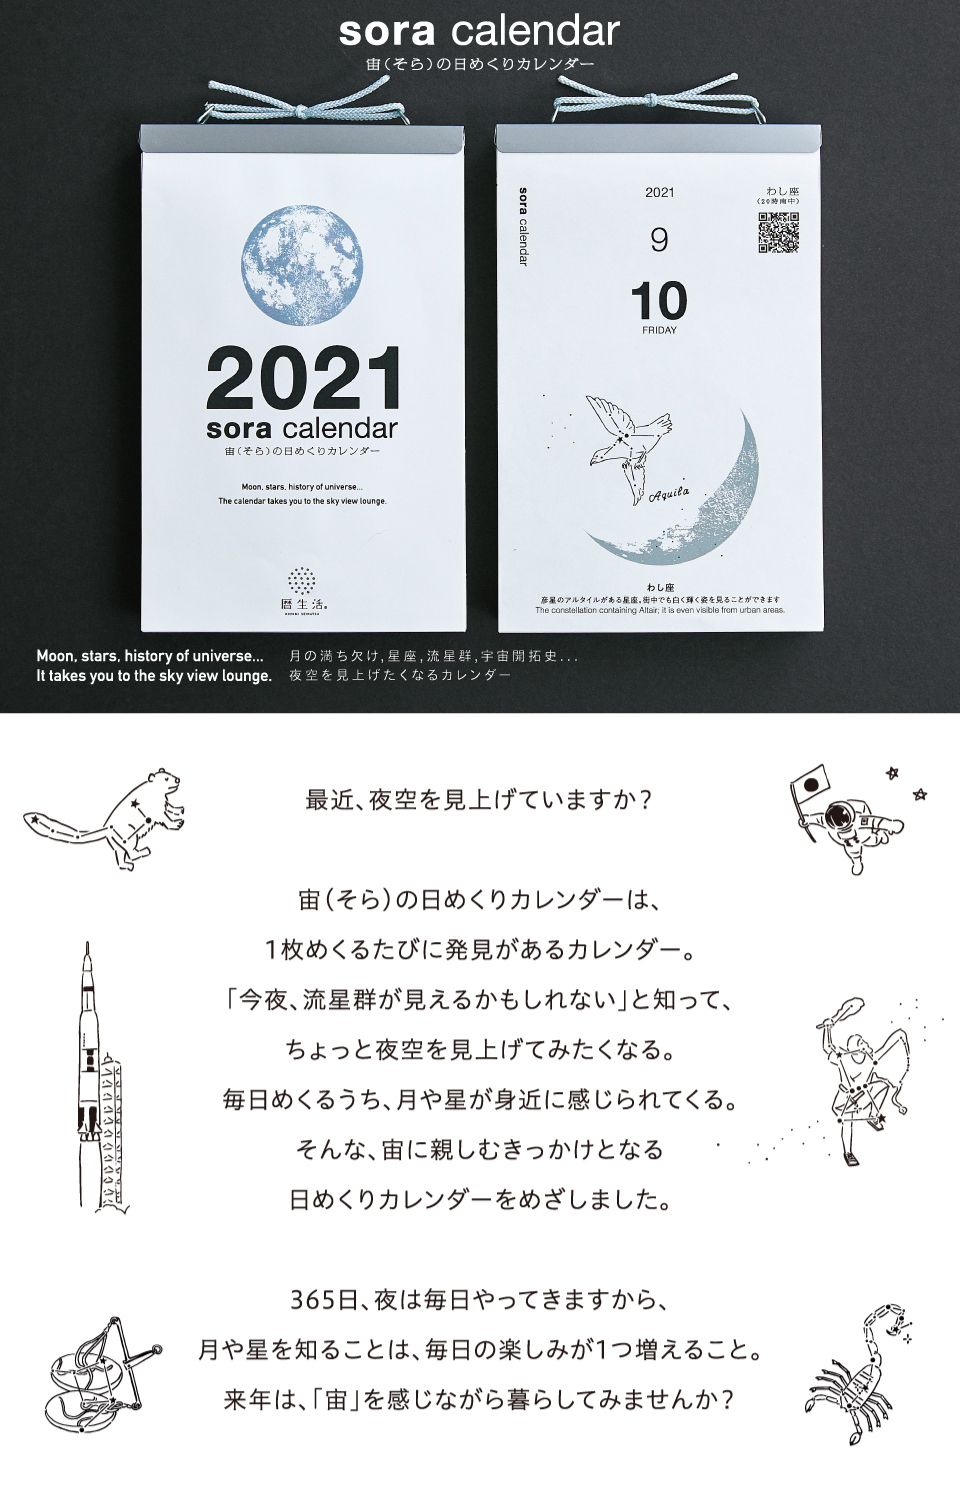 宙の日めくりカレンダー 21 新日本カレンダー 小売商品紹介サイト